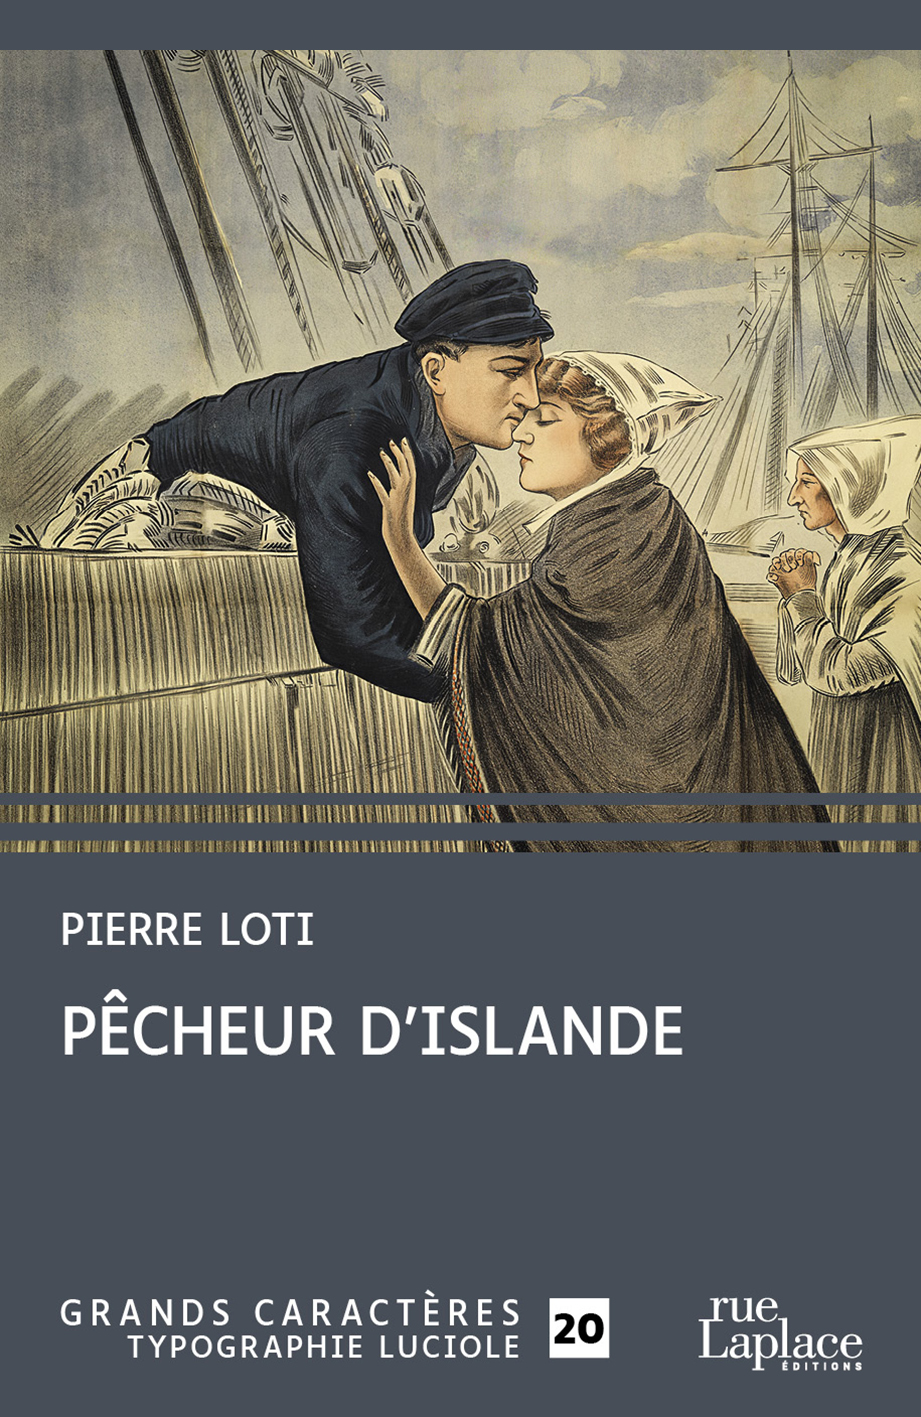 Couverture du livre en grands caractères Pêcheur d'Islande de Pierre Loti